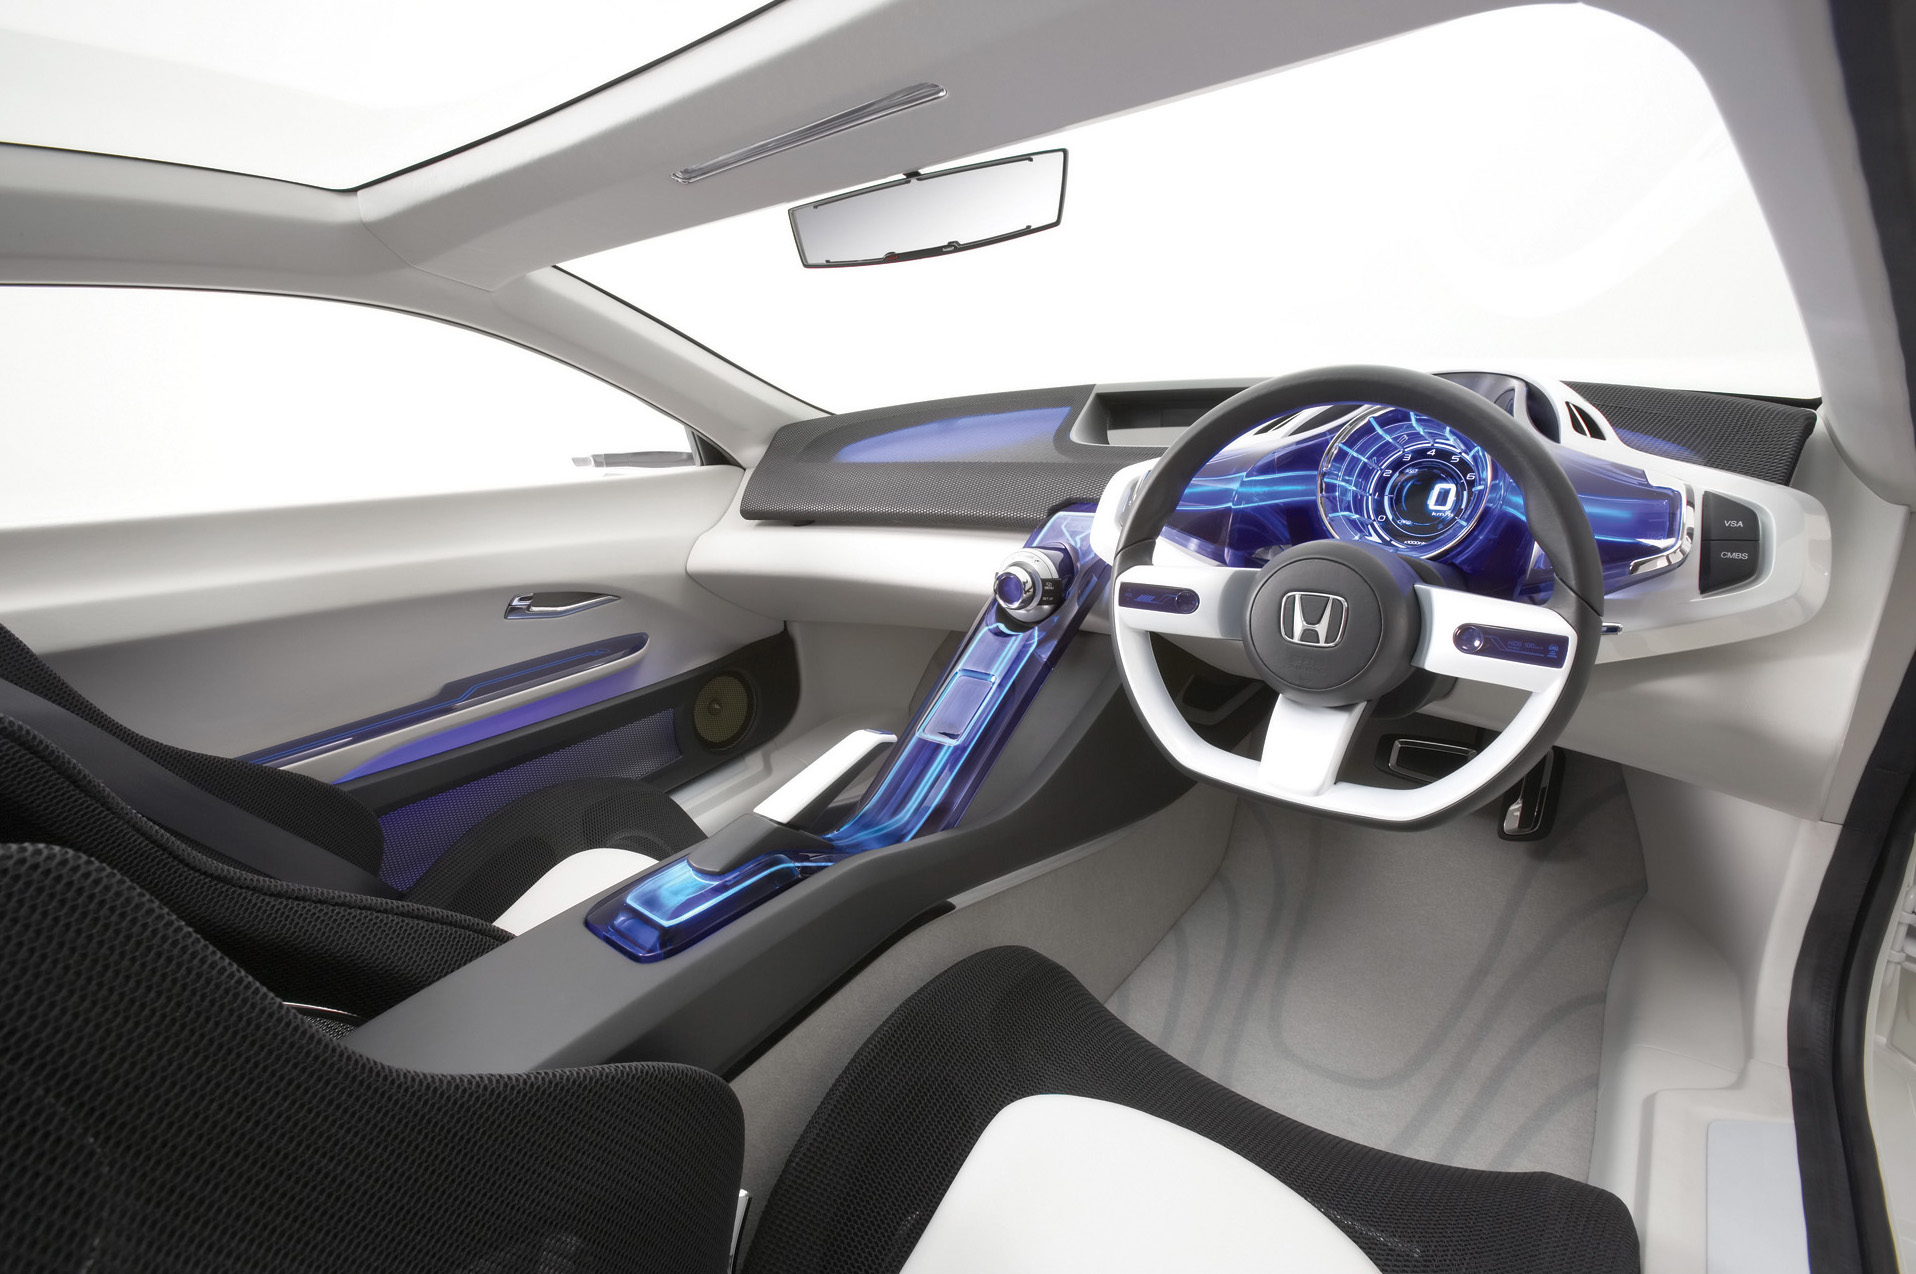 2007 Honda CR-Z Concept